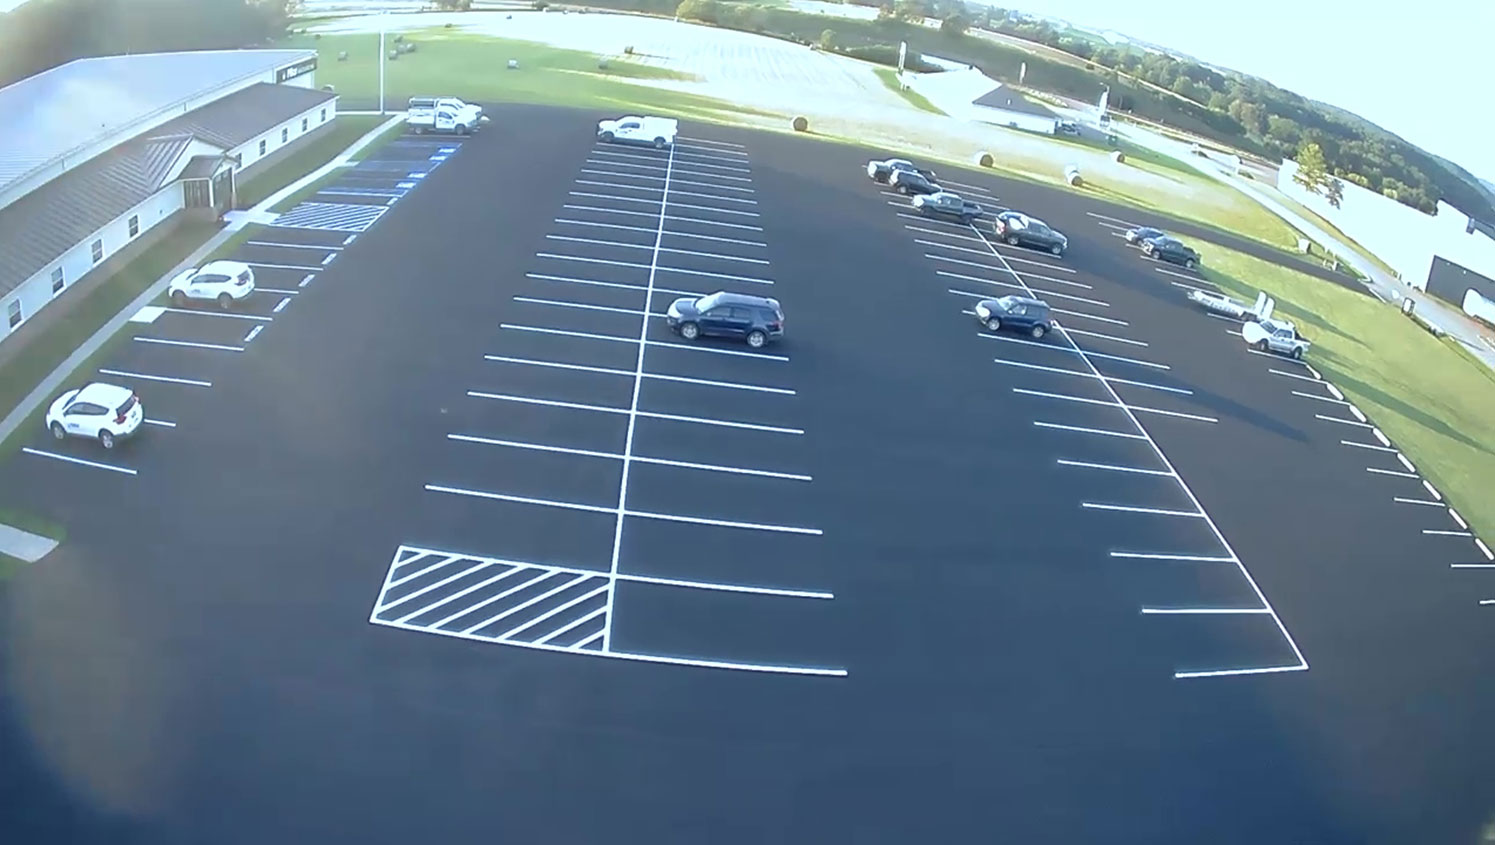 pillar innovations’ re-striped parking lot